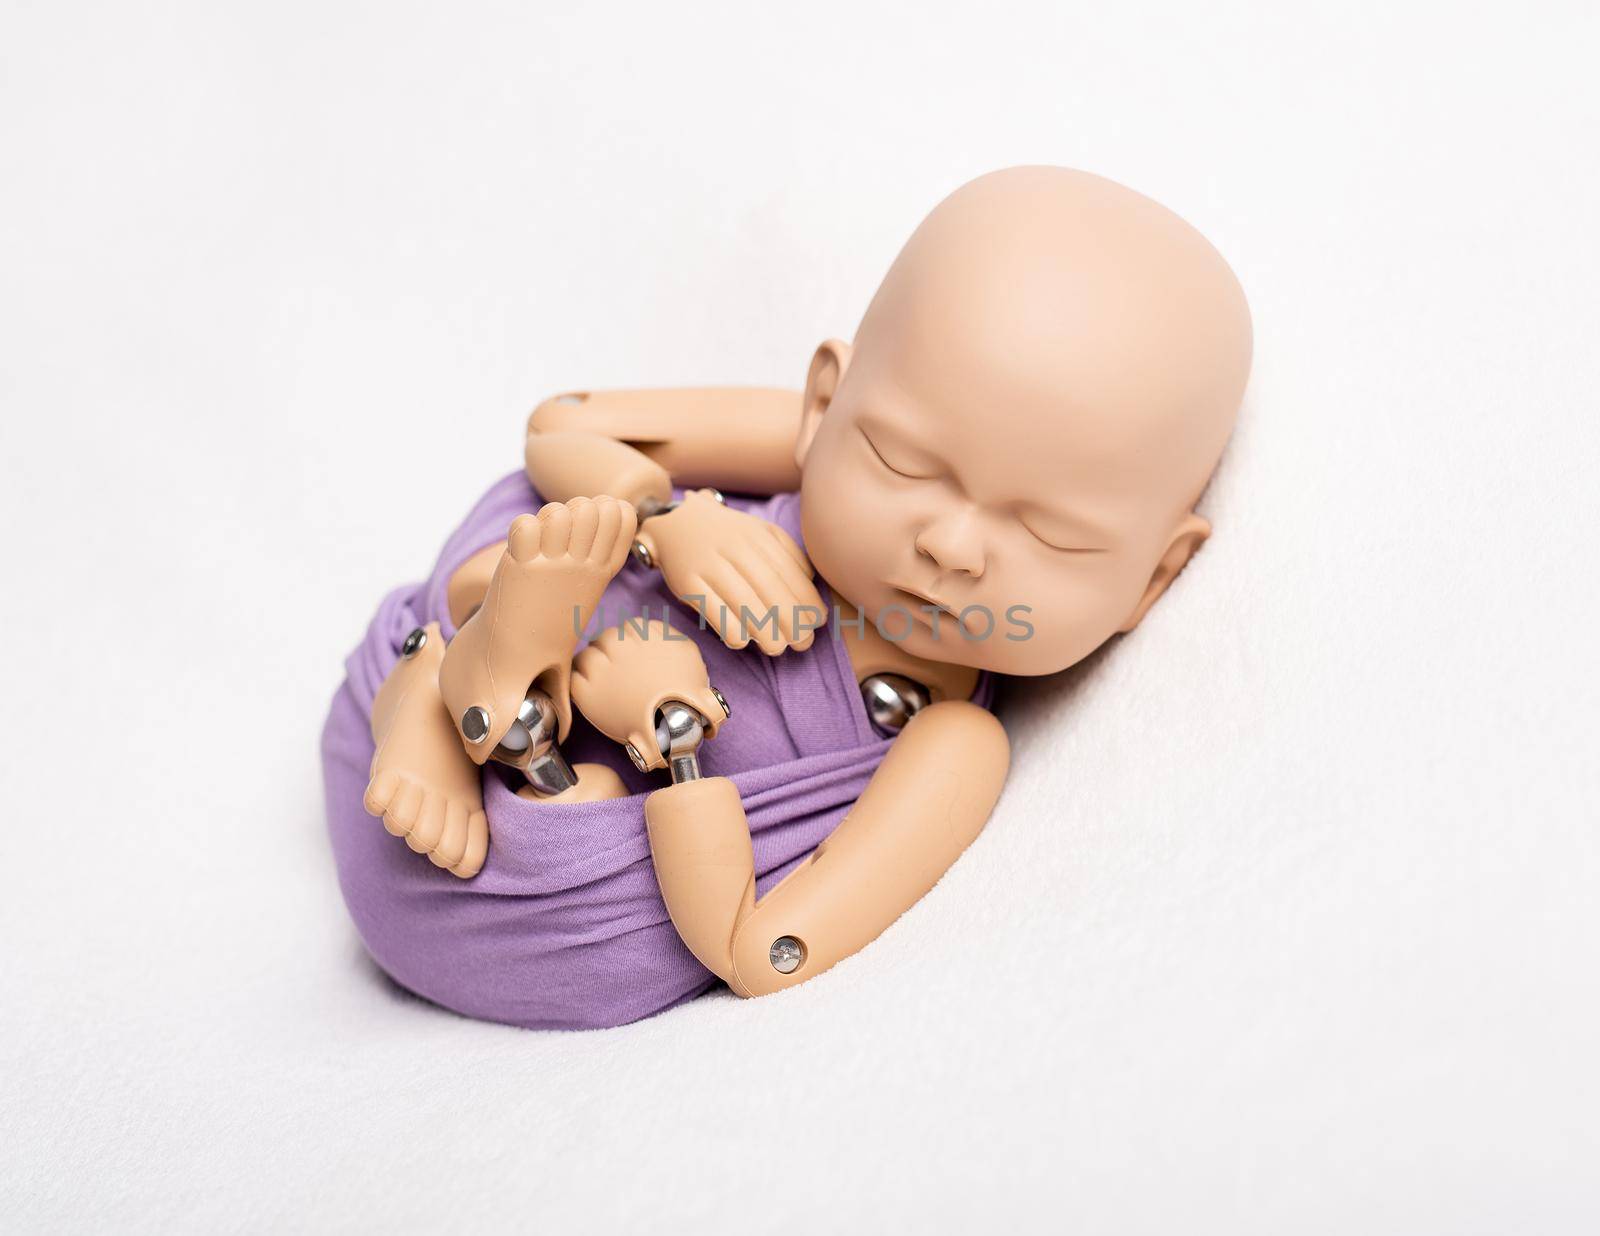 Doll of newborn kid in sling by tan4ikk1